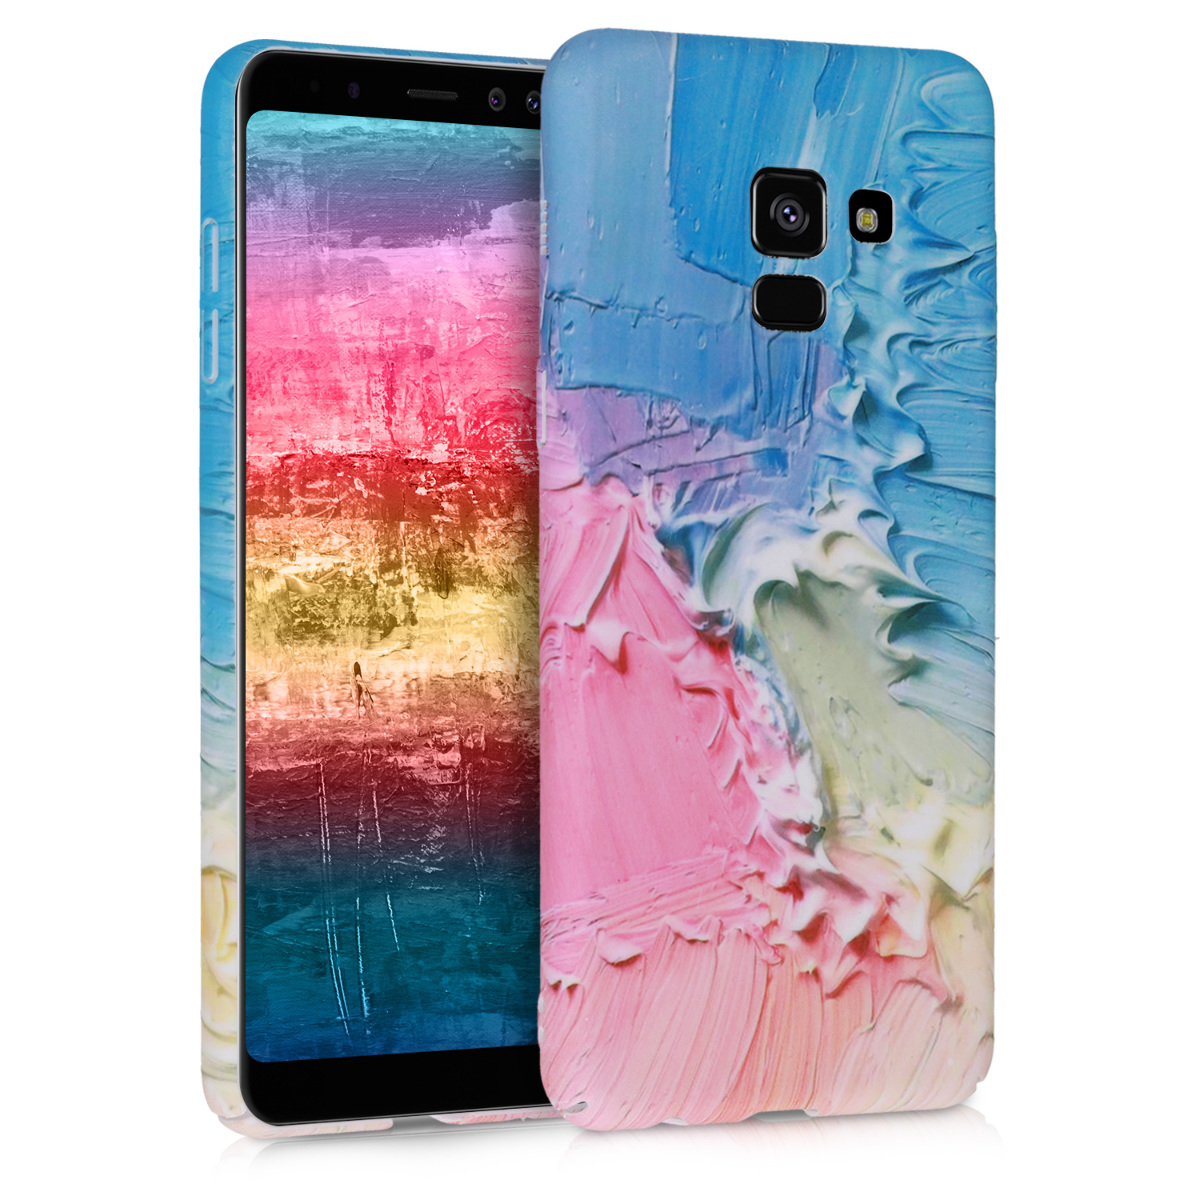 Kvalitní plastové pouzdro pro Samsung A8 (2018) - Barva Při zasažení světle  růžová / světle  modrý / žlutý